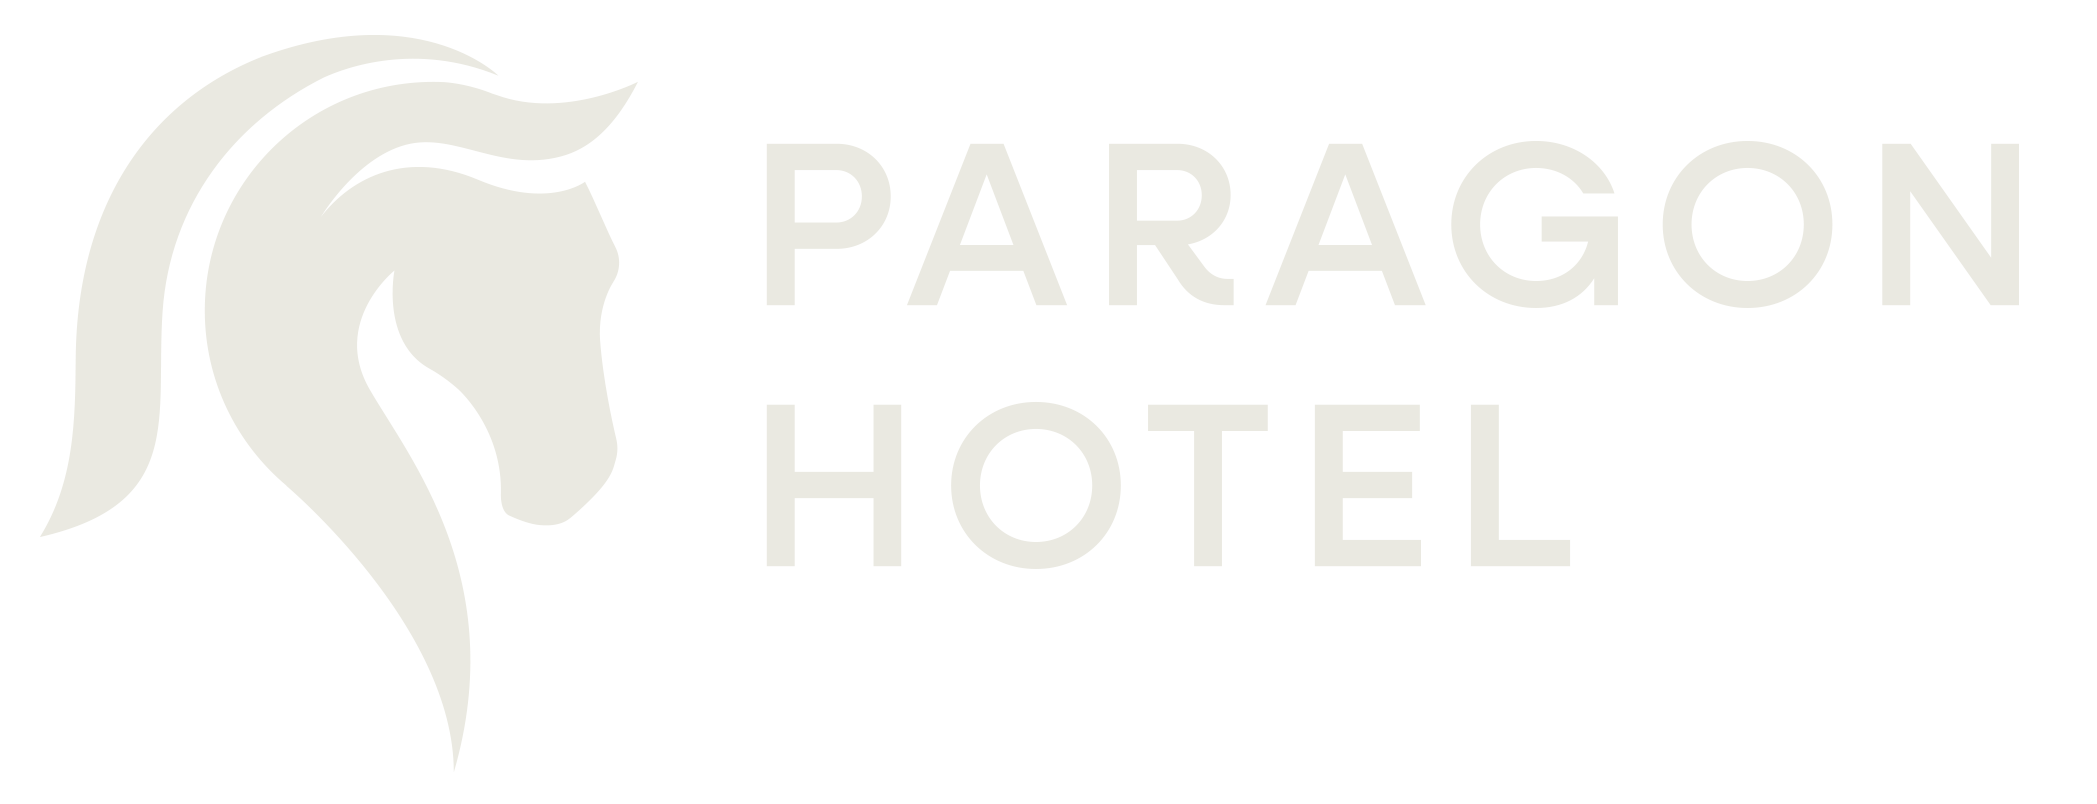 Paragon Hotel Mudgee